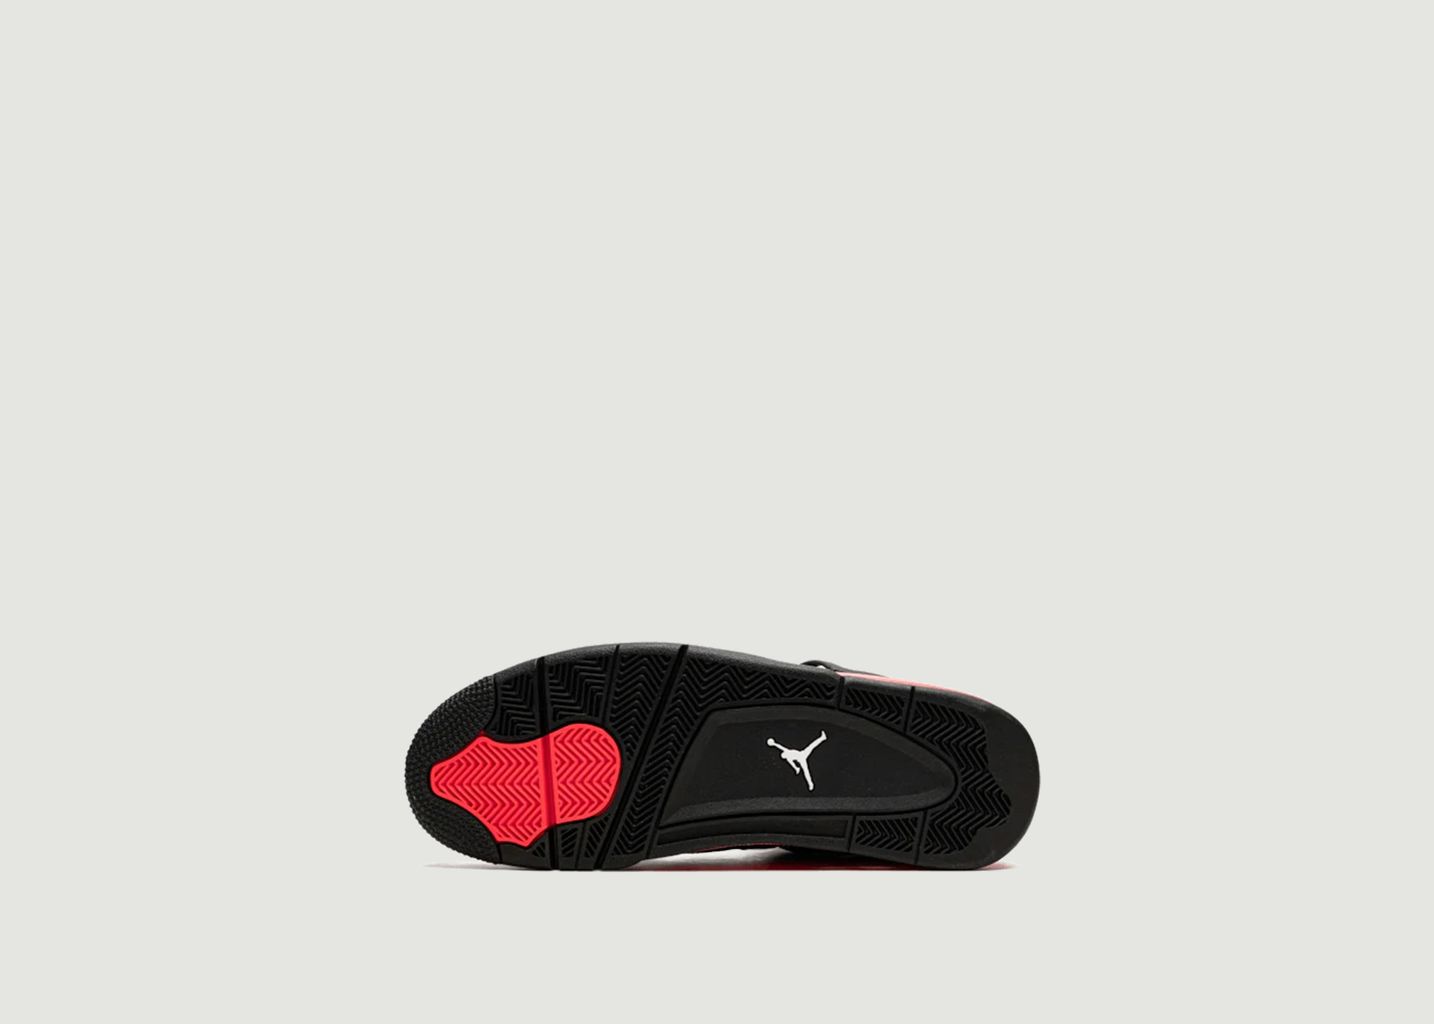 Air Jordan 4 Retro Red Thunder (GS) Sneakers - Nike